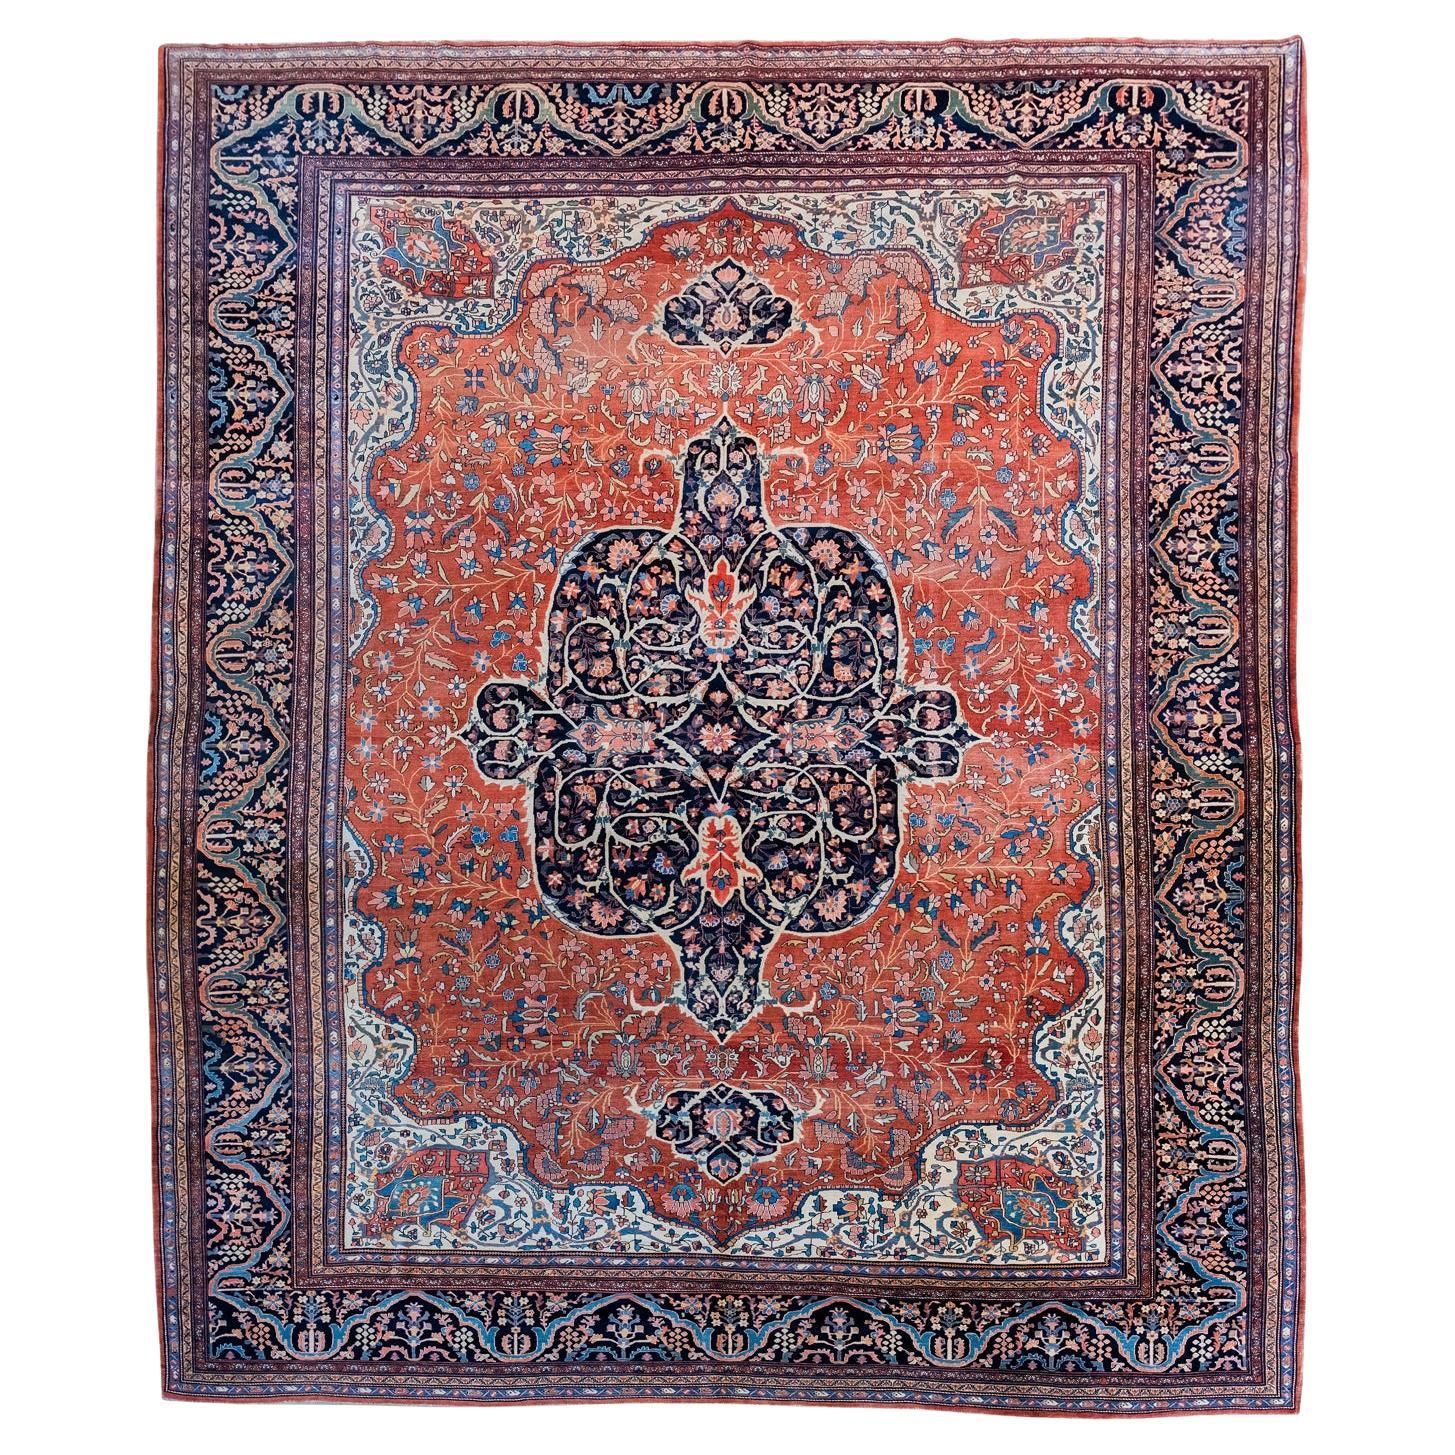 Antique Persian Farahan Carpet, Red, Orange, Indigo, 10’ x 14’ For Sale